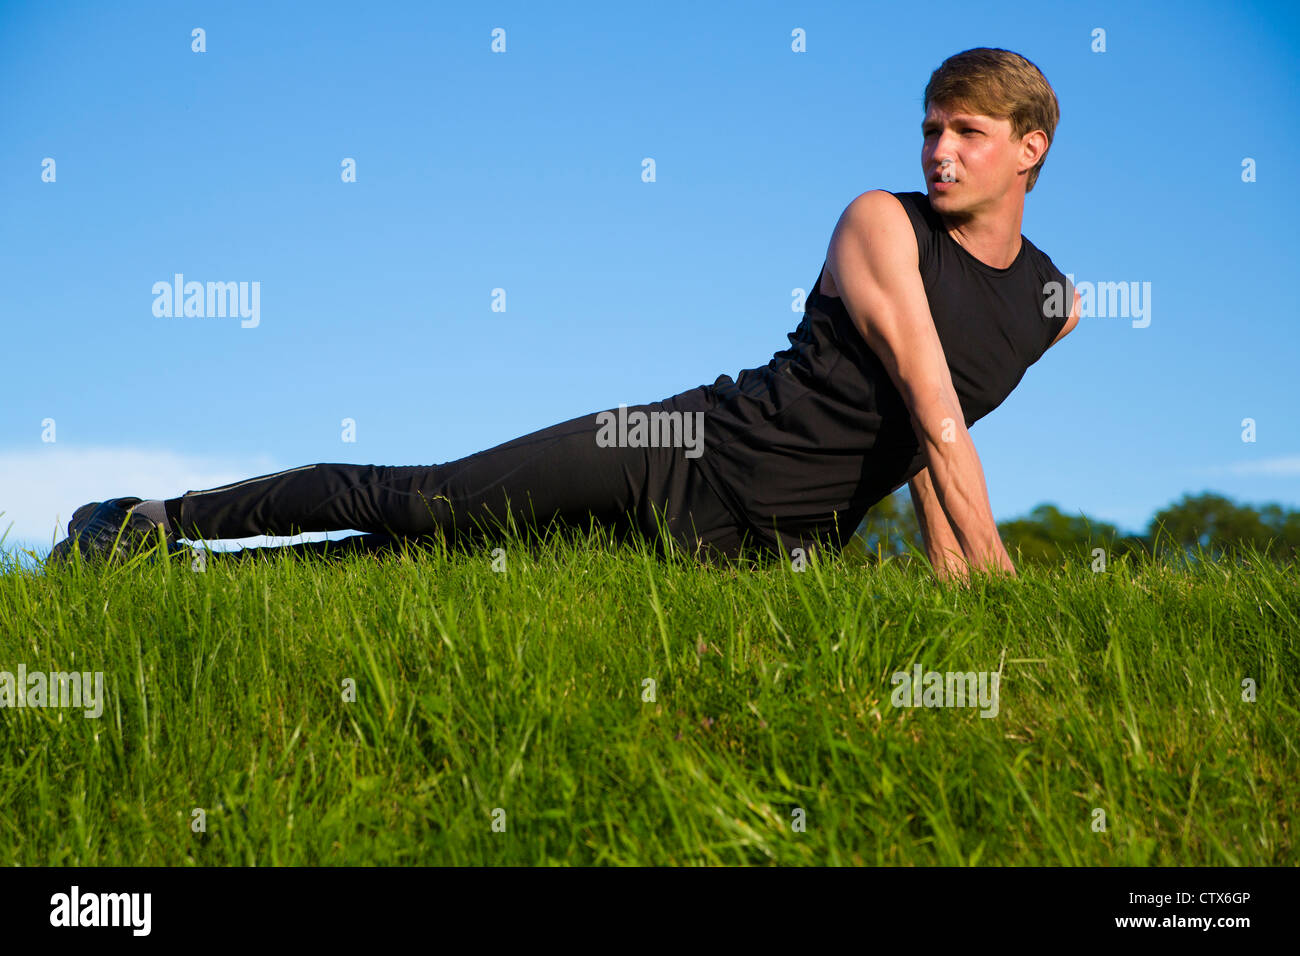 Sportler streckt seine Bauch- und Rückenmuskulatur Stockfoto